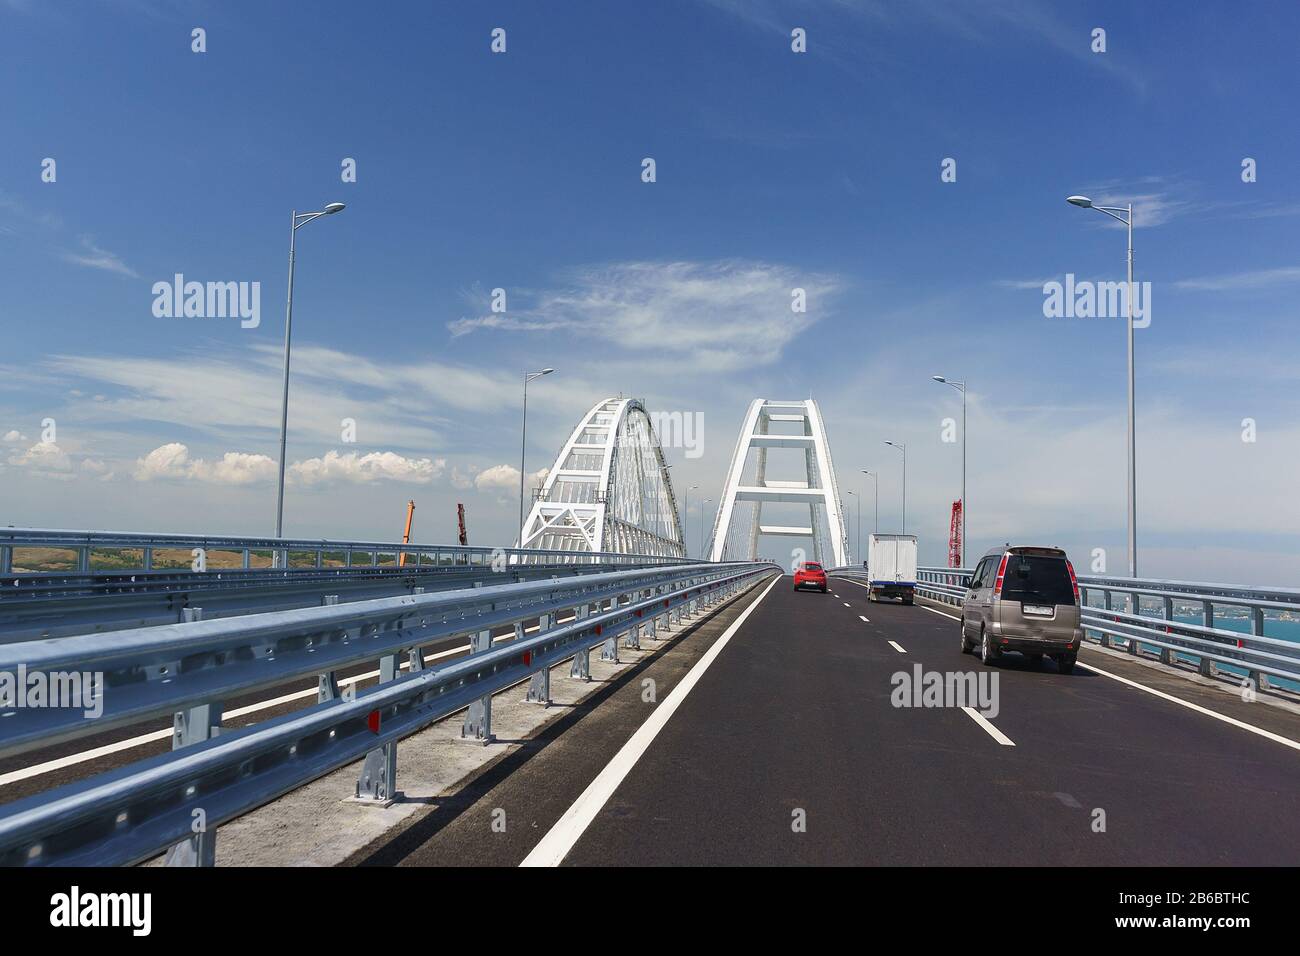 Des voitures sur le pont Crimean conduisent jusqu'aux arches en métal blanc au-dessus du fairway. Journée ensoleillée en mai 2018 Banque D'Images